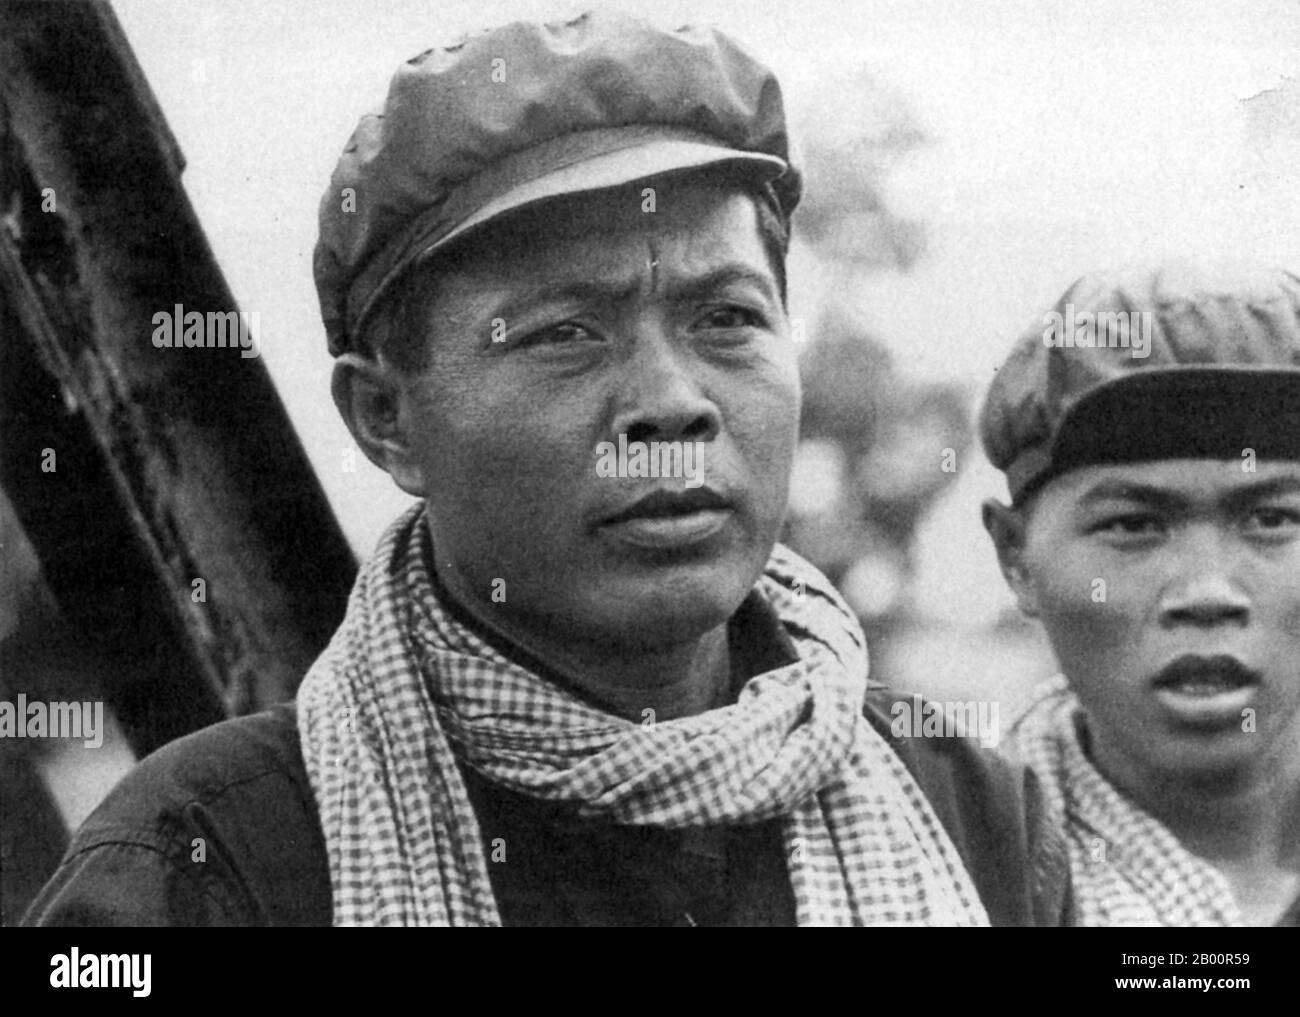 Kambodscha: Leitender Khmer Rouge Kader Khek Penn, ein Kommandant der Nordwest-Zone, wurde 1977 in Tuol Sleng hingerichtet. Die Khmer Rouge, oder Kommunistische Partei von Kampuchea, regierte Kambodscha von 1975 bis 1979, angeführt von Pol Pot, Nuon Chea, Ieng Sary, Son Sen und Khieu Samphan. Es ist in erster Linie für seine Brutalität und Politik der Social Engineering, die in Millionen von Todesfällen geführt erinnert. Ihre Versuche zur Agrarreform führten zu einer weit verbreiteten Hungersnot, während ihr Beharren auf absoluter Selbstversorgung, auch bei der Versorgung mit Medikamenten, zum Tod von Tausenden an behandelbaren Krankheiten (wie Malaria) führte. Stockfoto